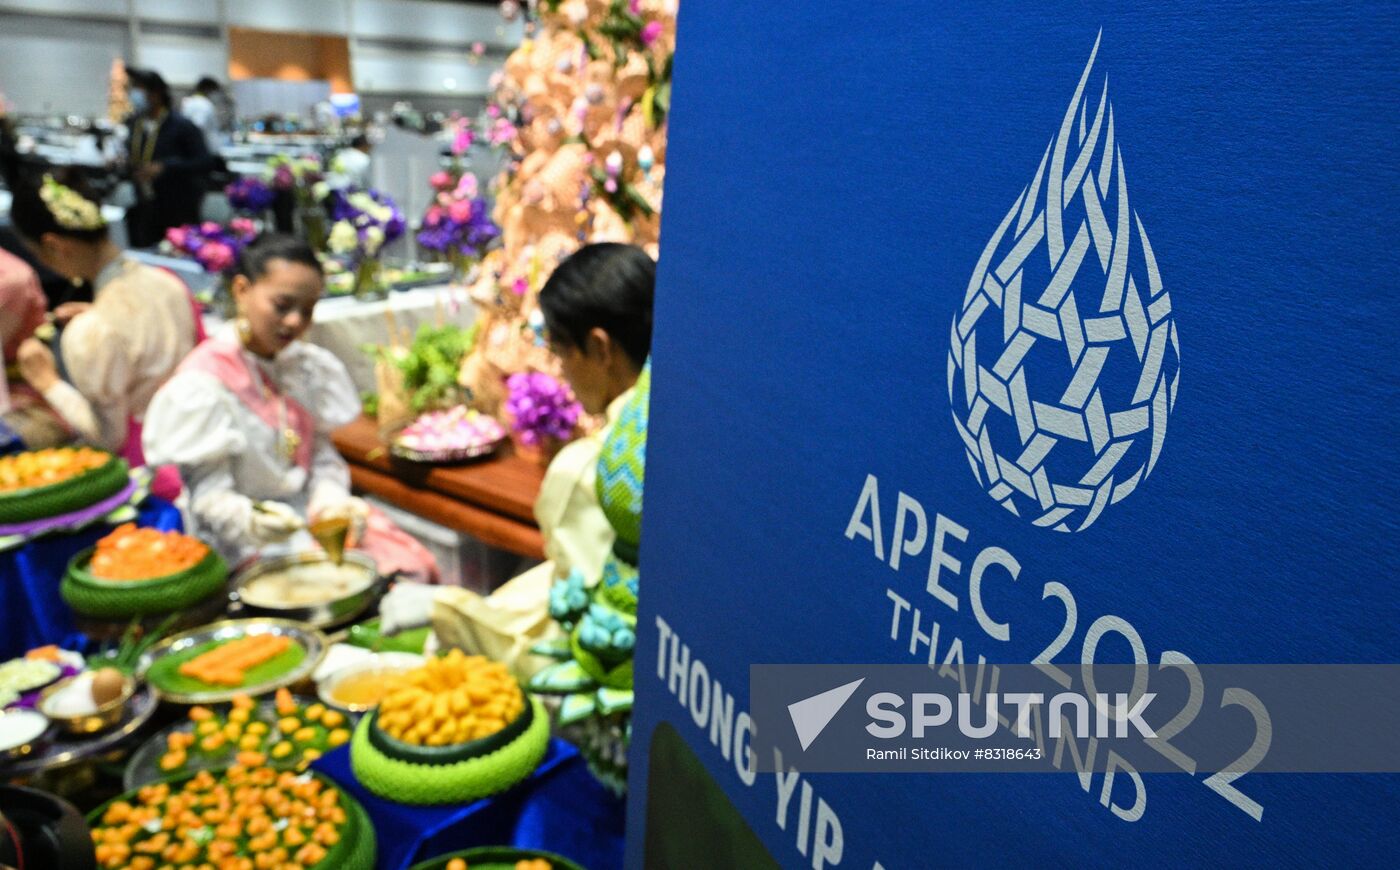 Thailand APEC Summit